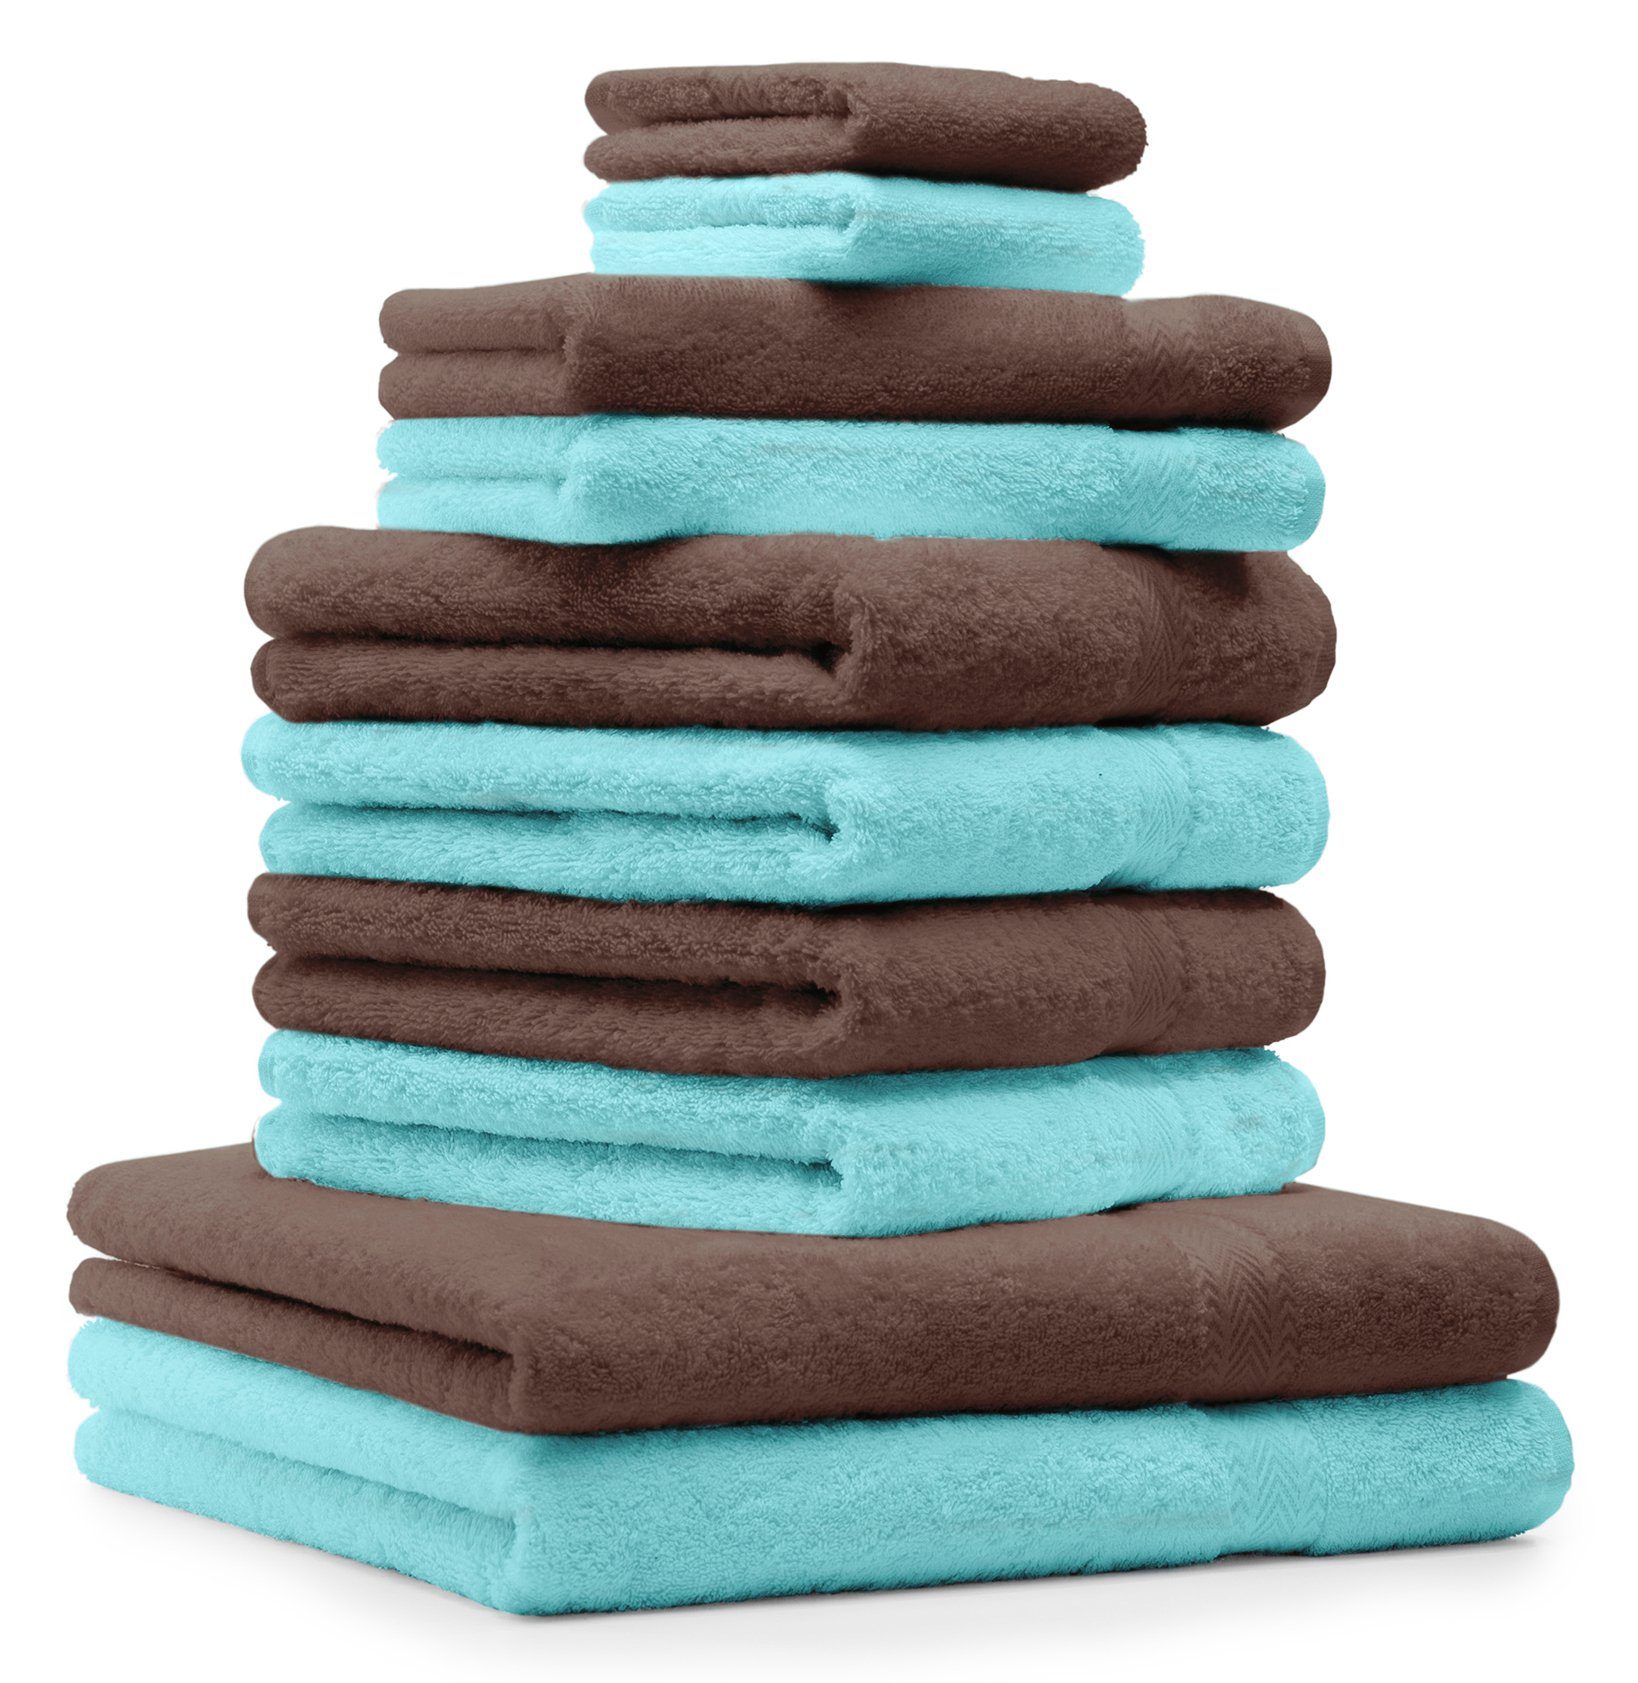 & 100 Handtuch Baumwolle, % Farbe Nussbraun Betz 10-TLG. Set Handtuch-Set Premium Türkis, (10-tlg)